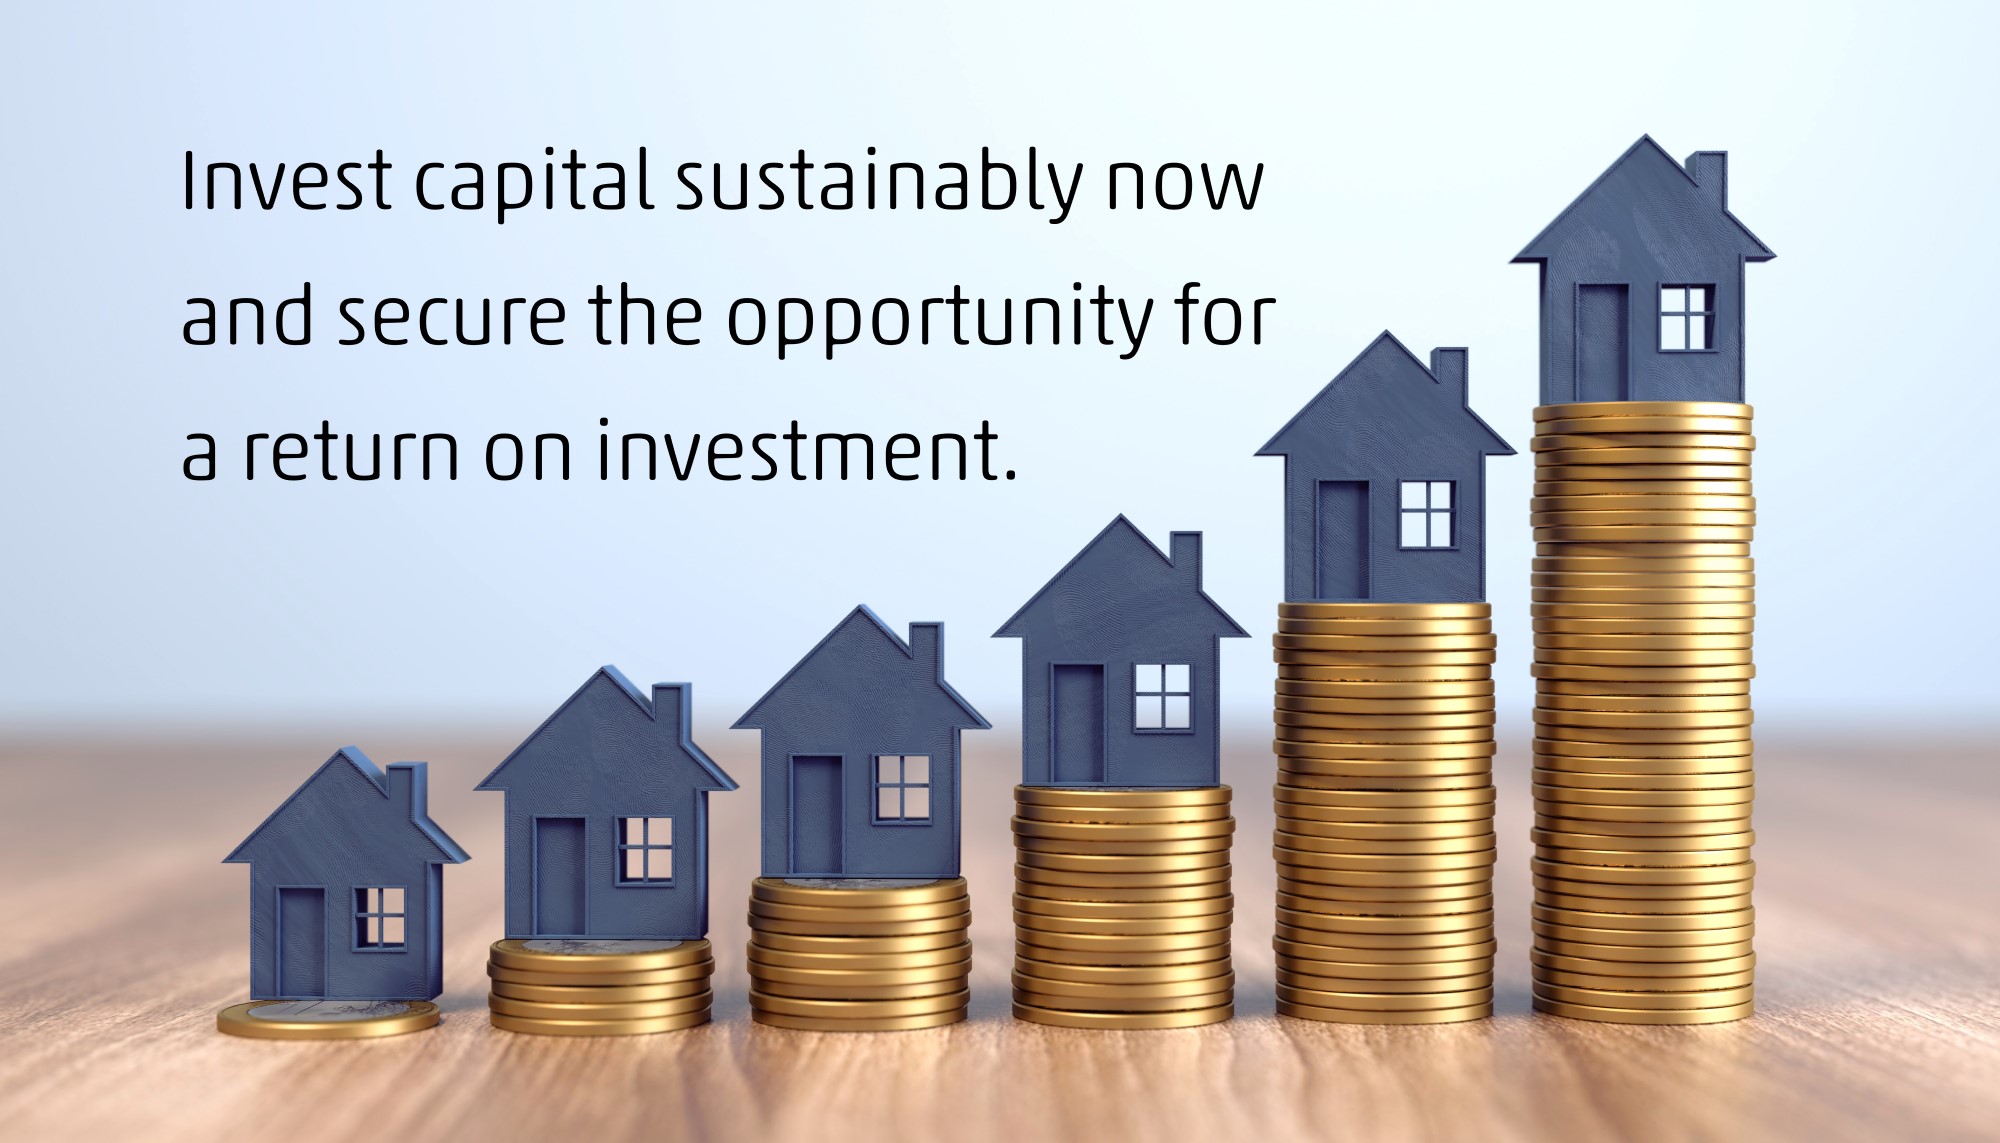 Jetzt Kapital nachhaltig investieren und Renditechance sichern